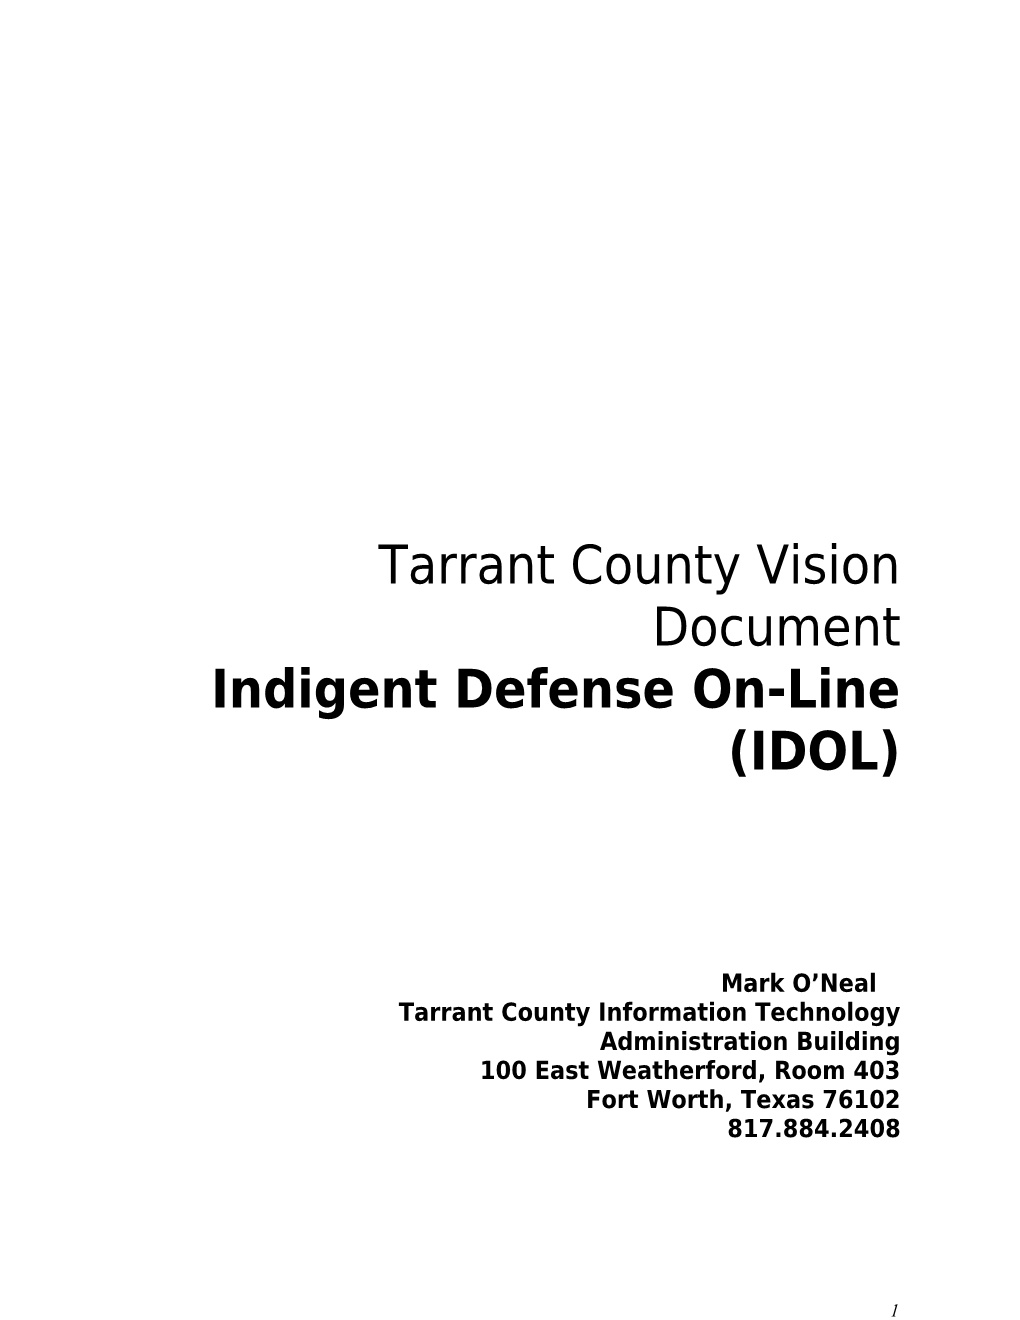 Indigent Defense Vision Statement